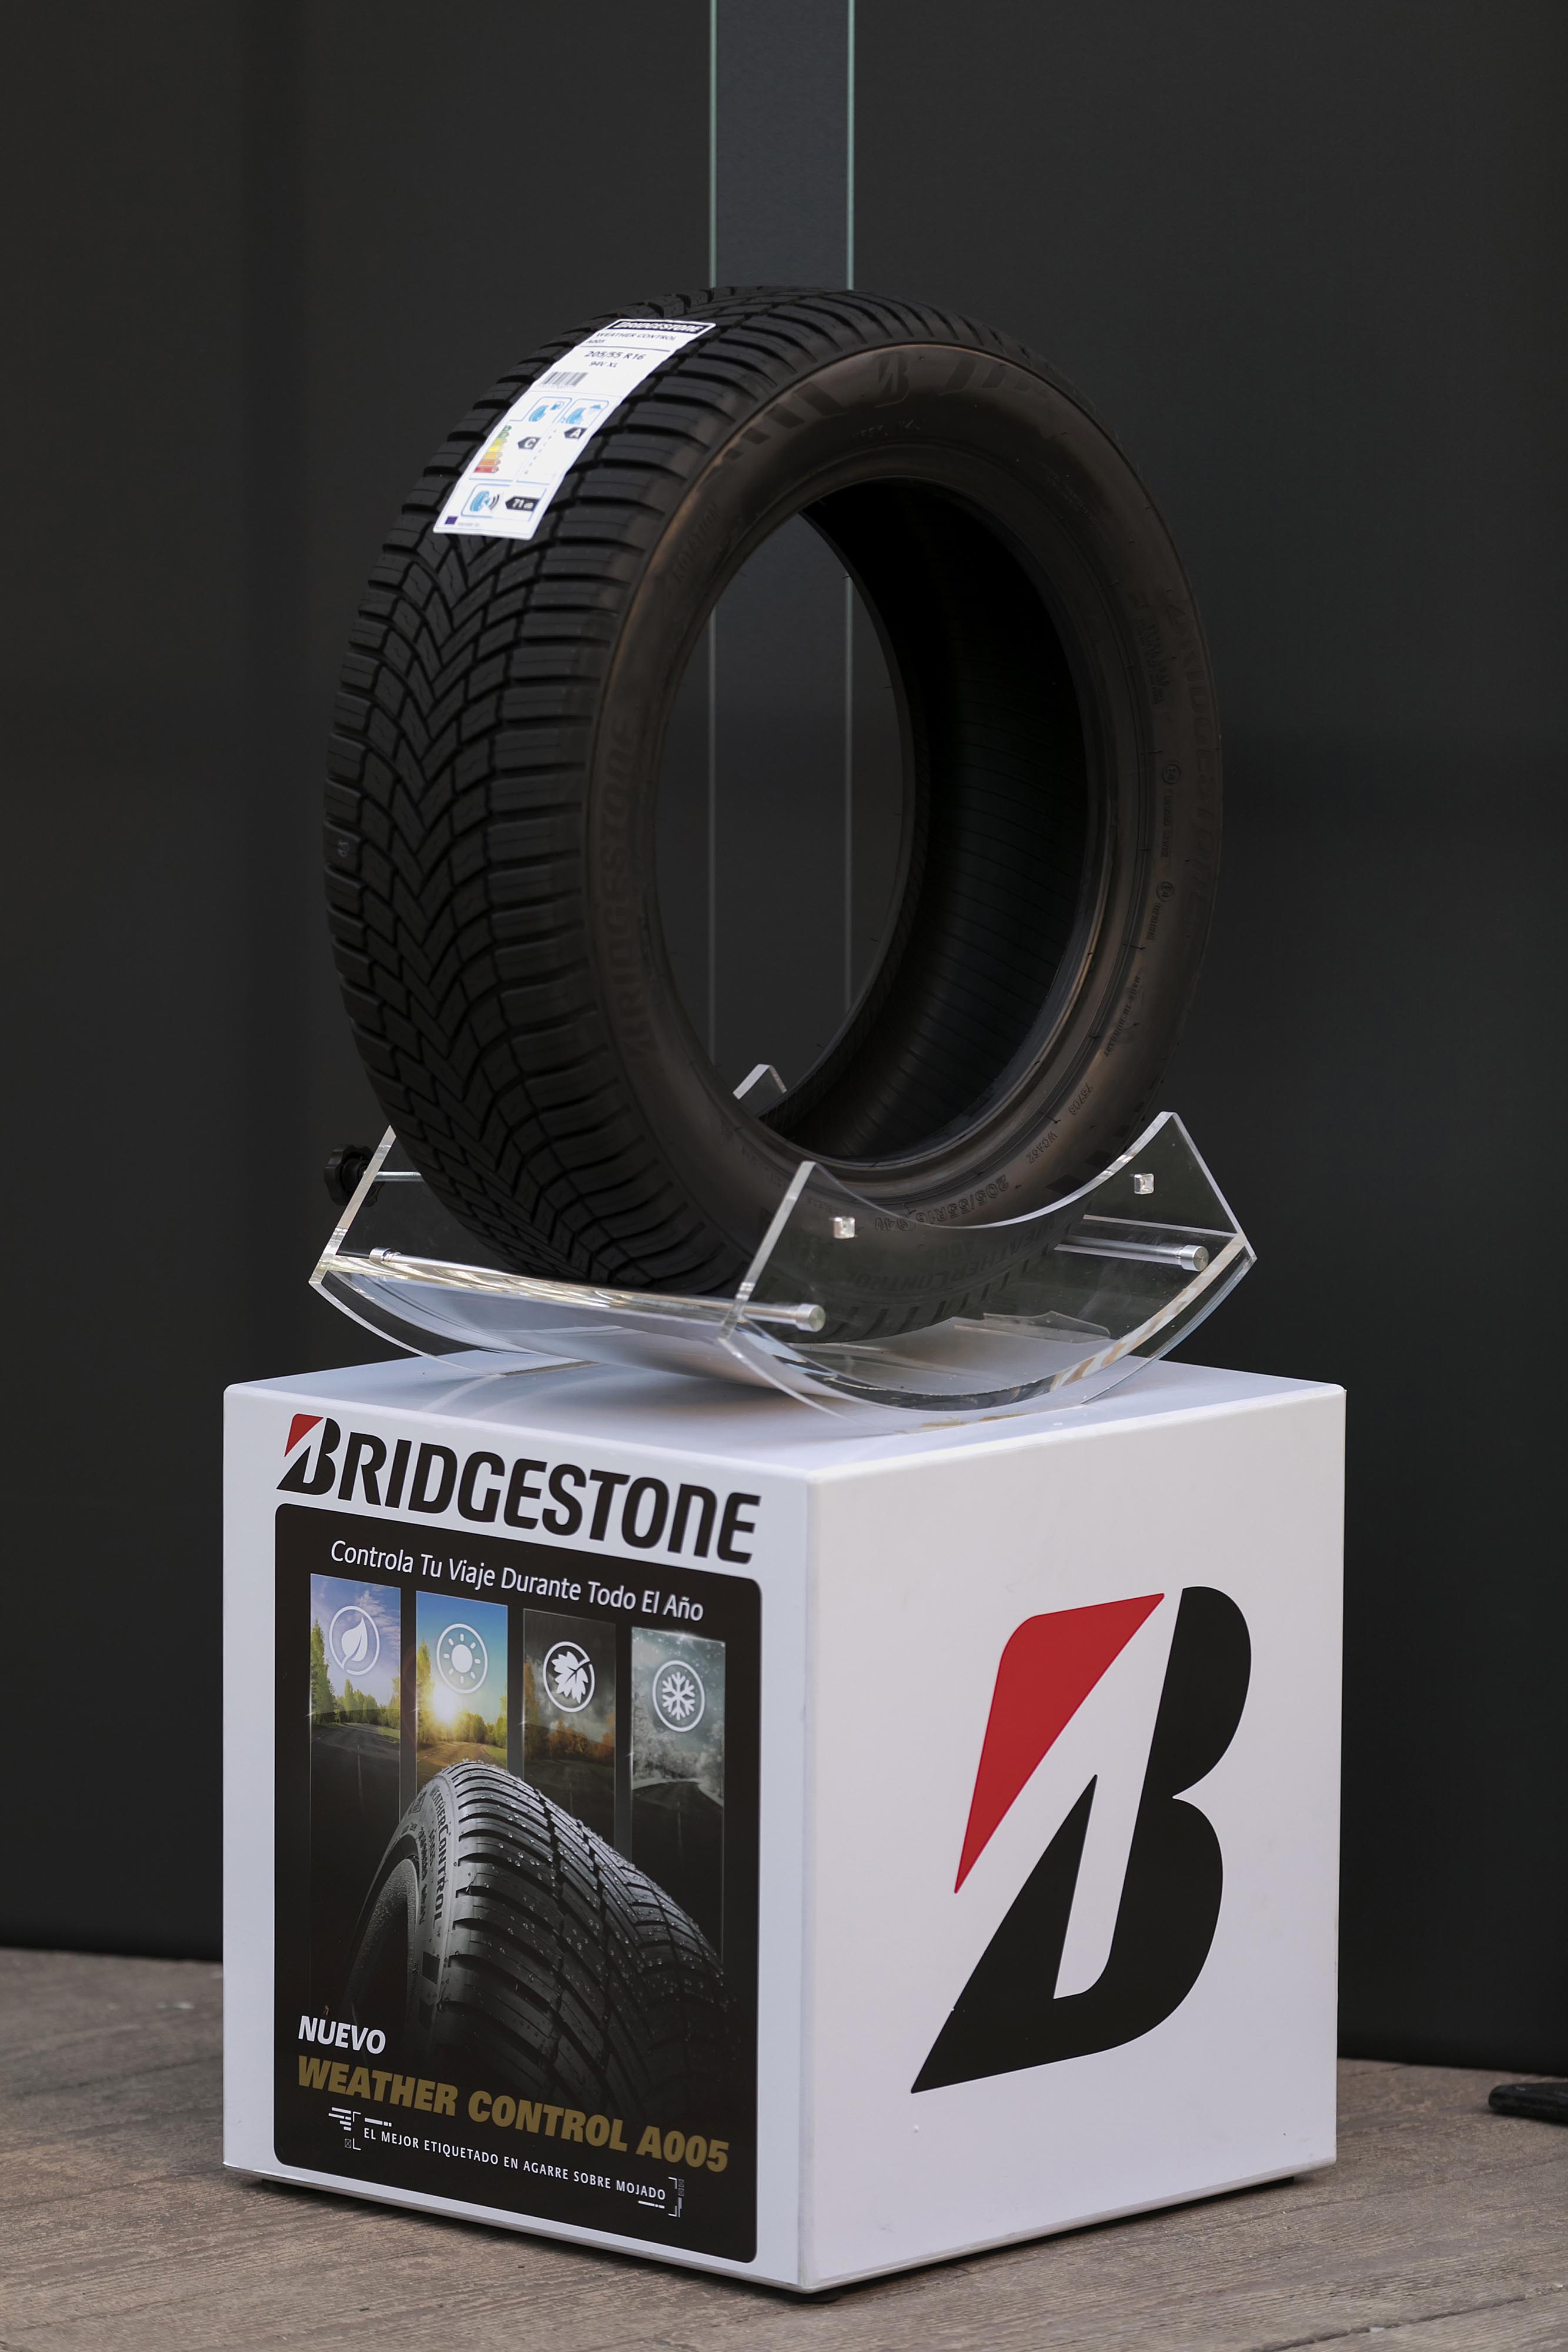 Bridgestone crea el Weather Control A005 un neumático de 4 estaciones